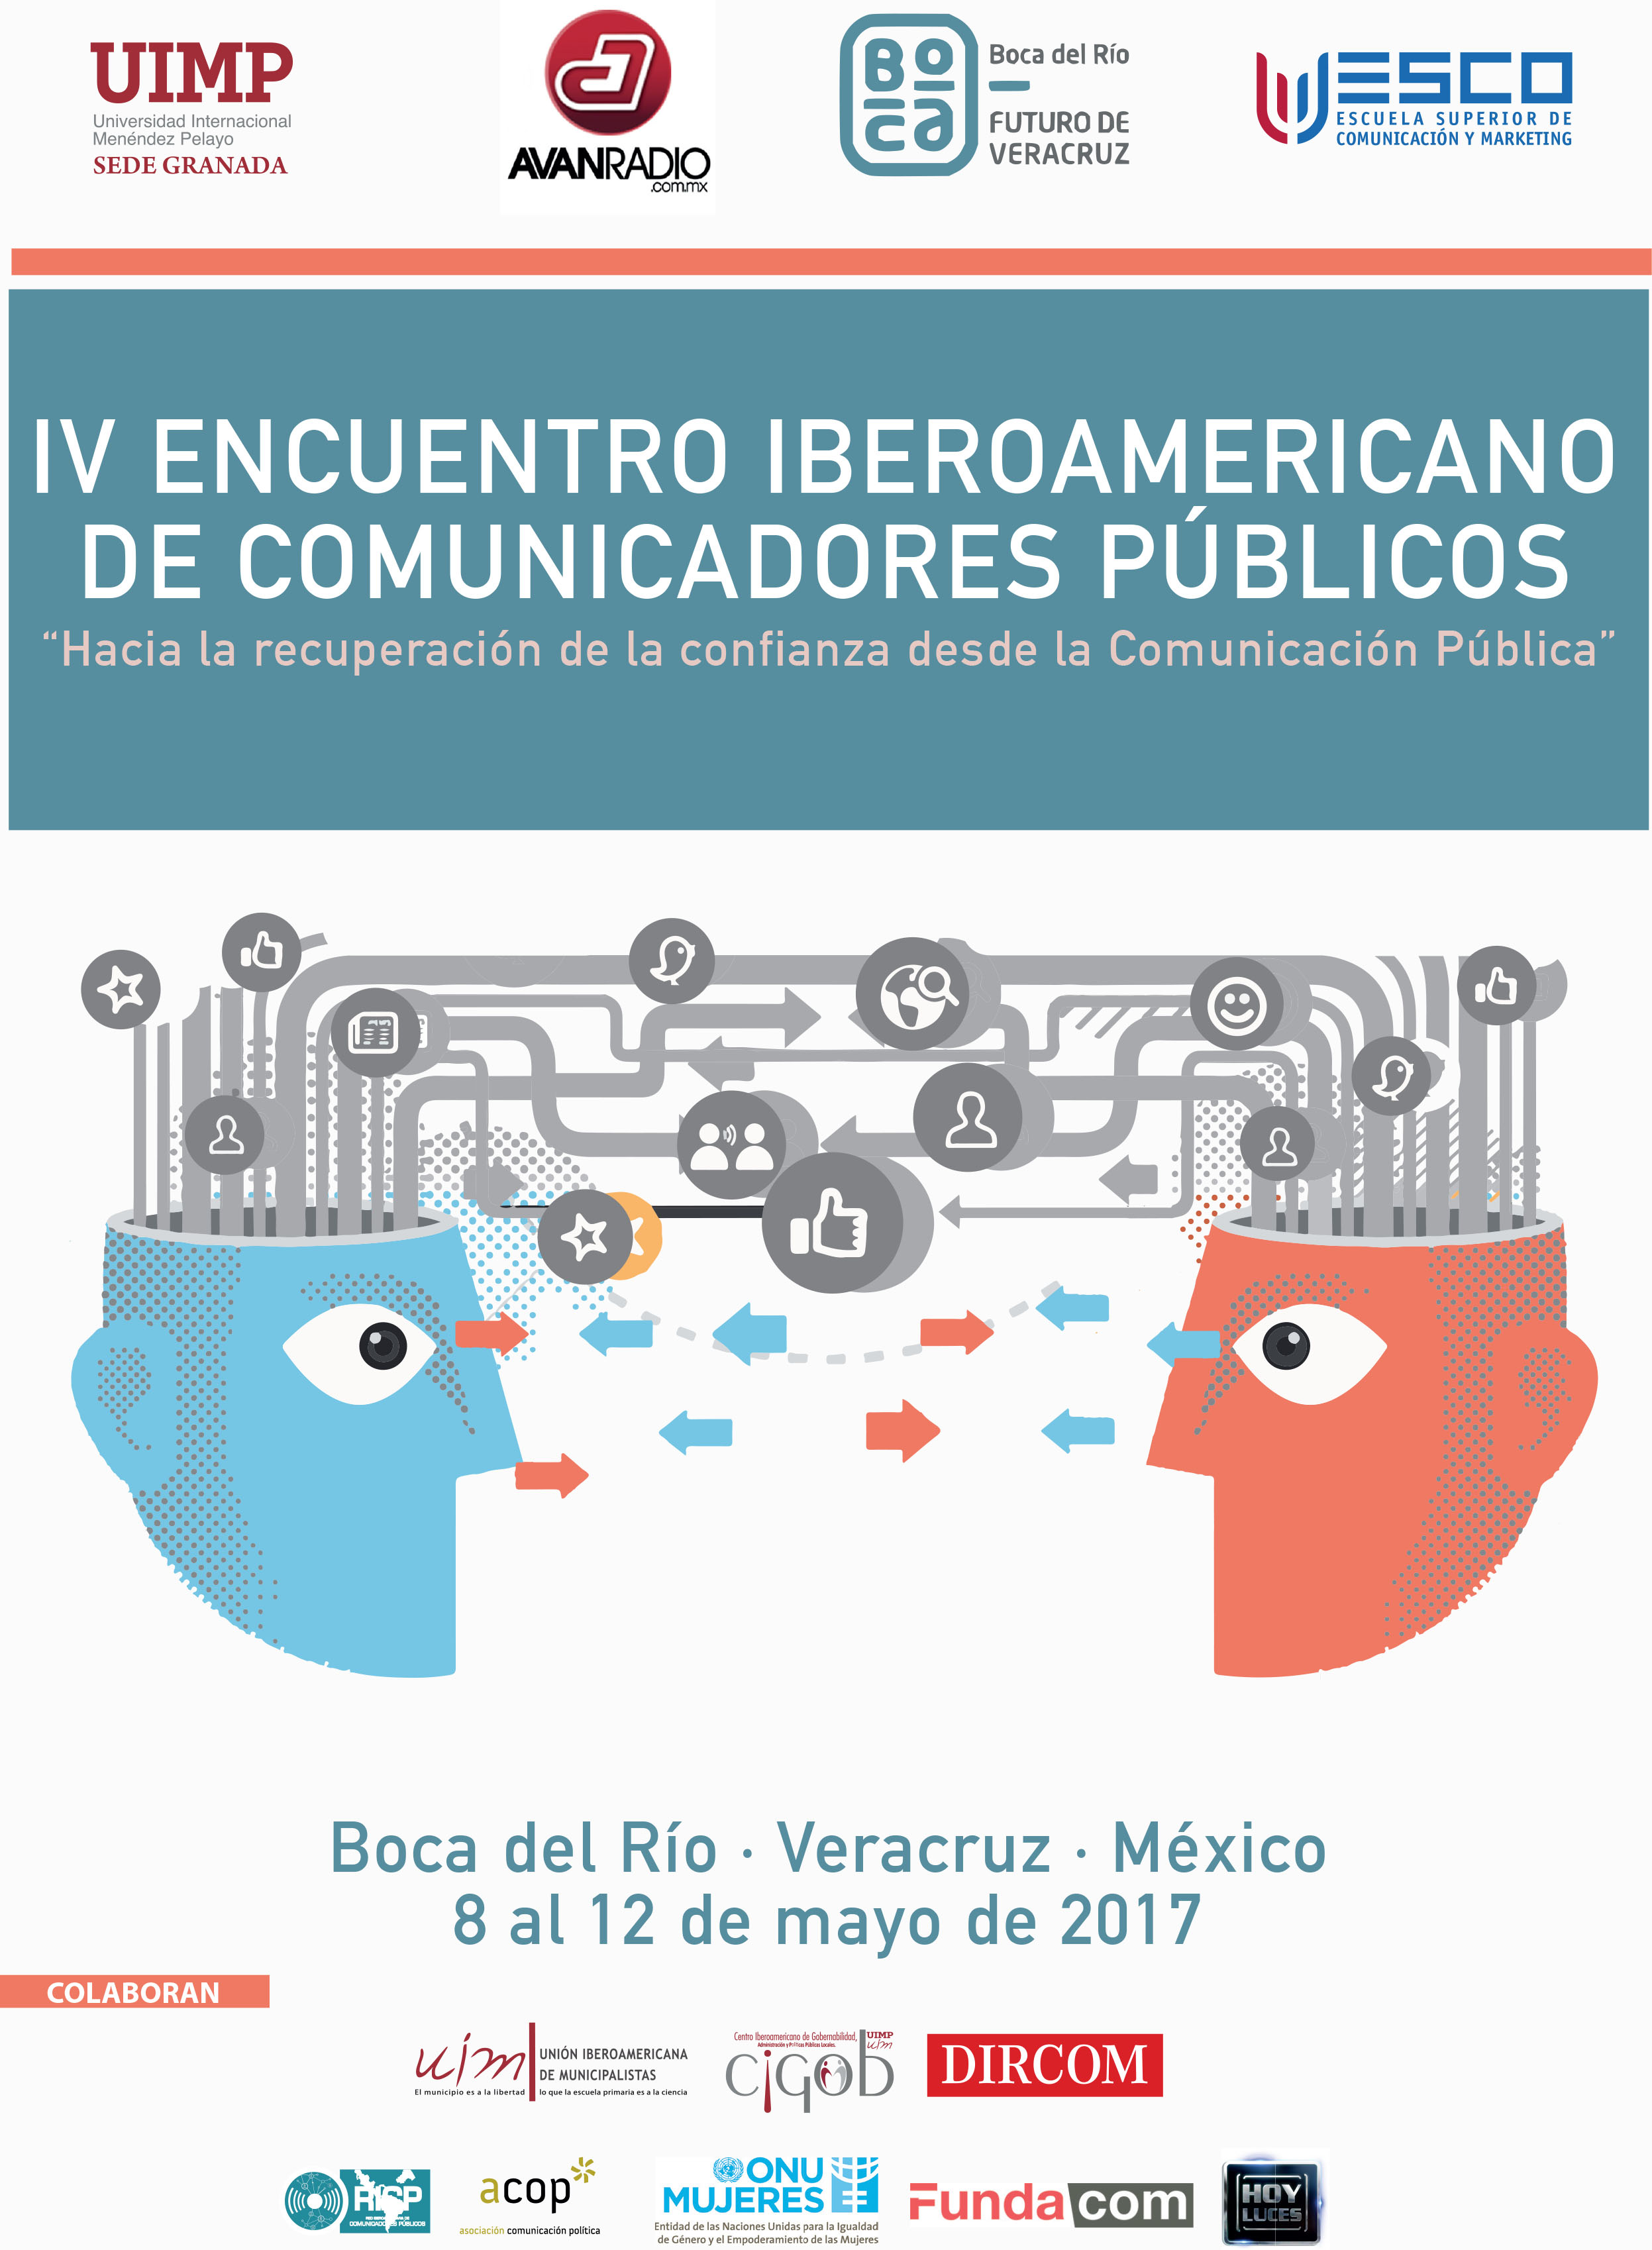 Diplomado Internacional en Comunicación Pública, 3ra Edición